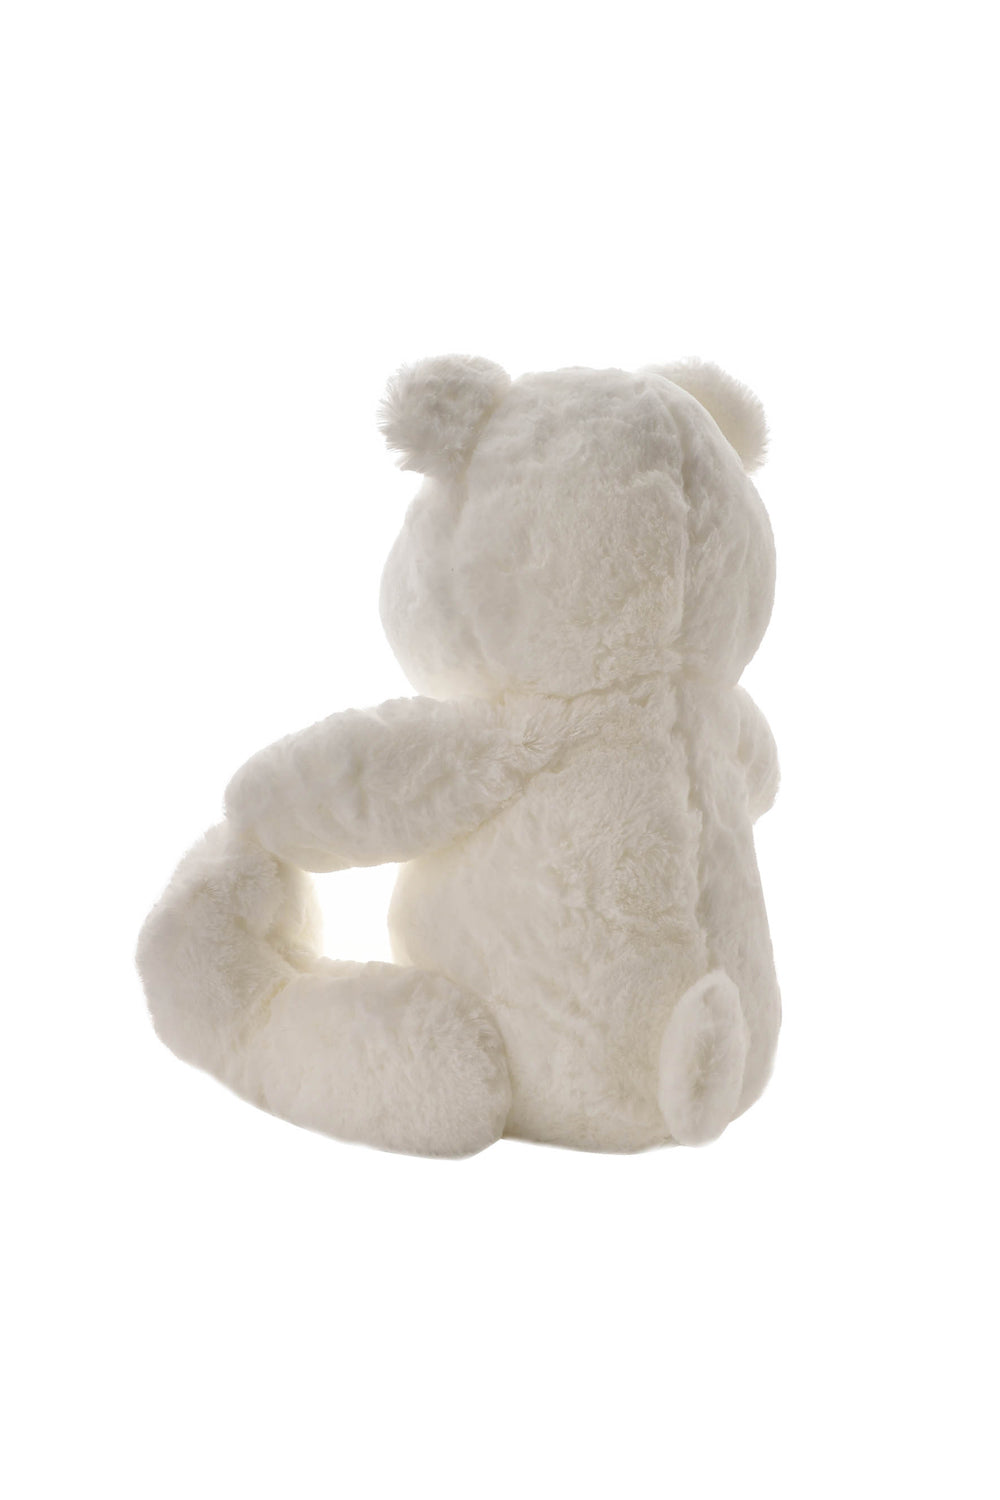 Bambino Bambino White Plush Bear Large 31cm 3 Shaws Department Stores